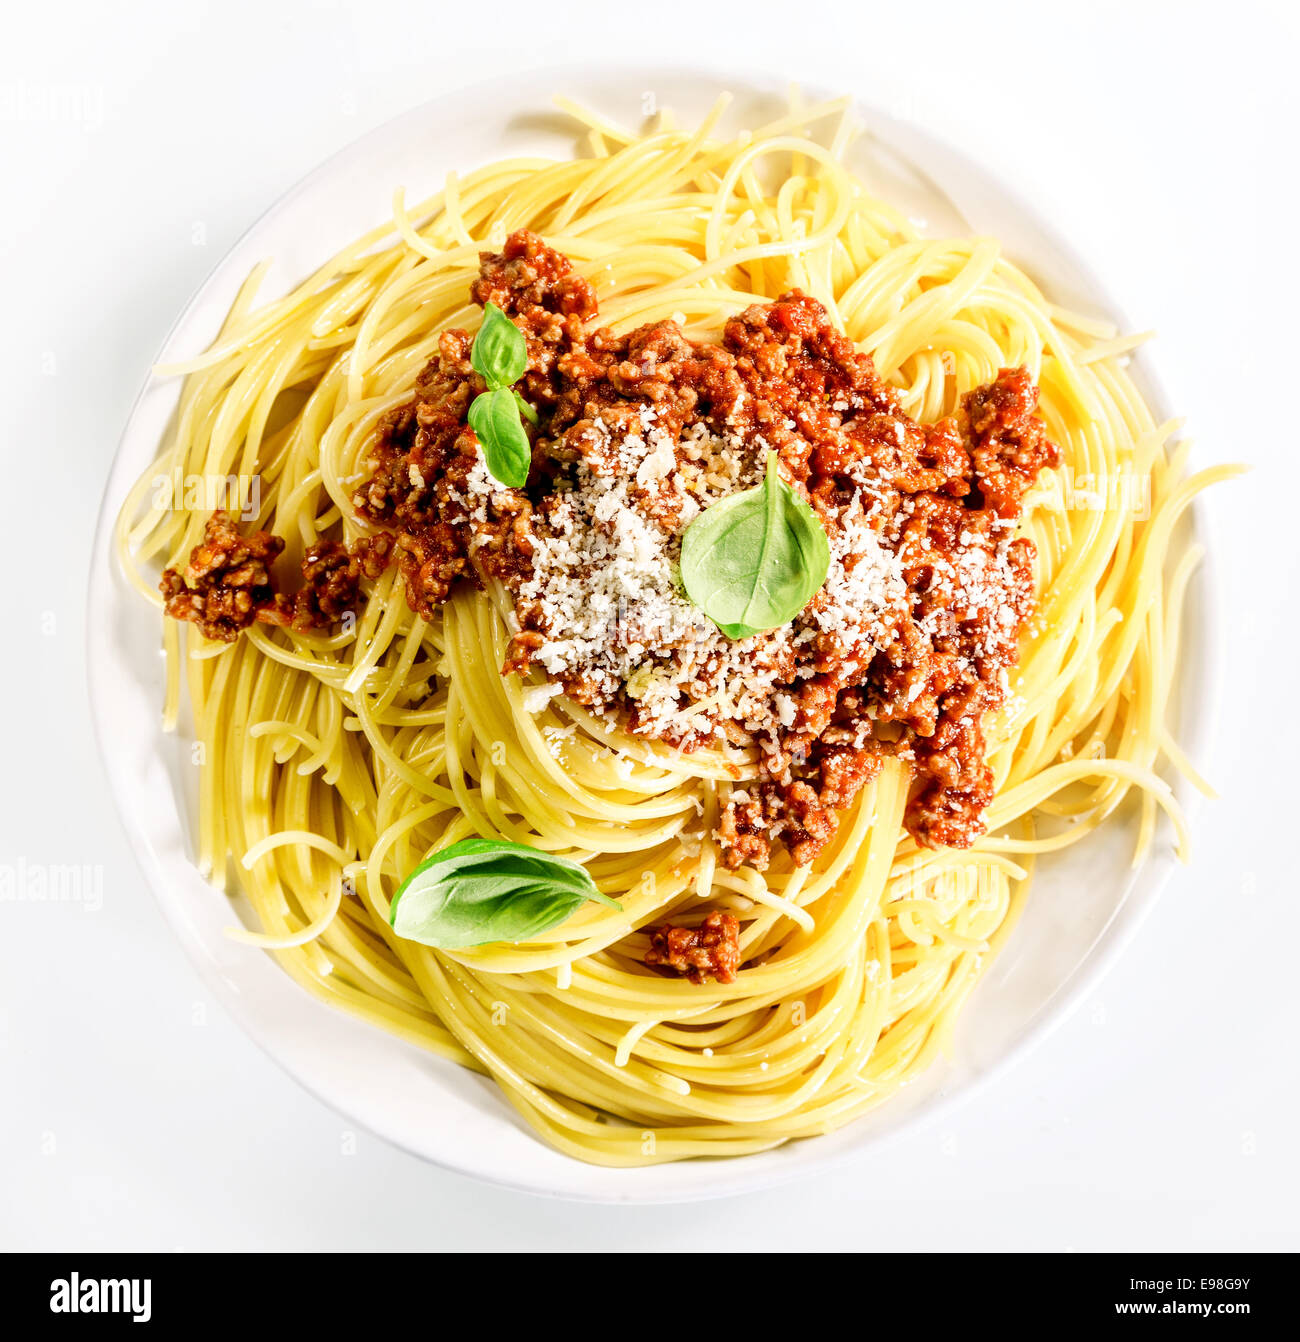 Au service de l'Italien de spaghettis à la bolognaise avec du boeuf haché, de parmesan et de feuilles de basilic frais pour une savoureuse cuisine méditerranéenne traditionnelle, overhead view on white Banque D'Images